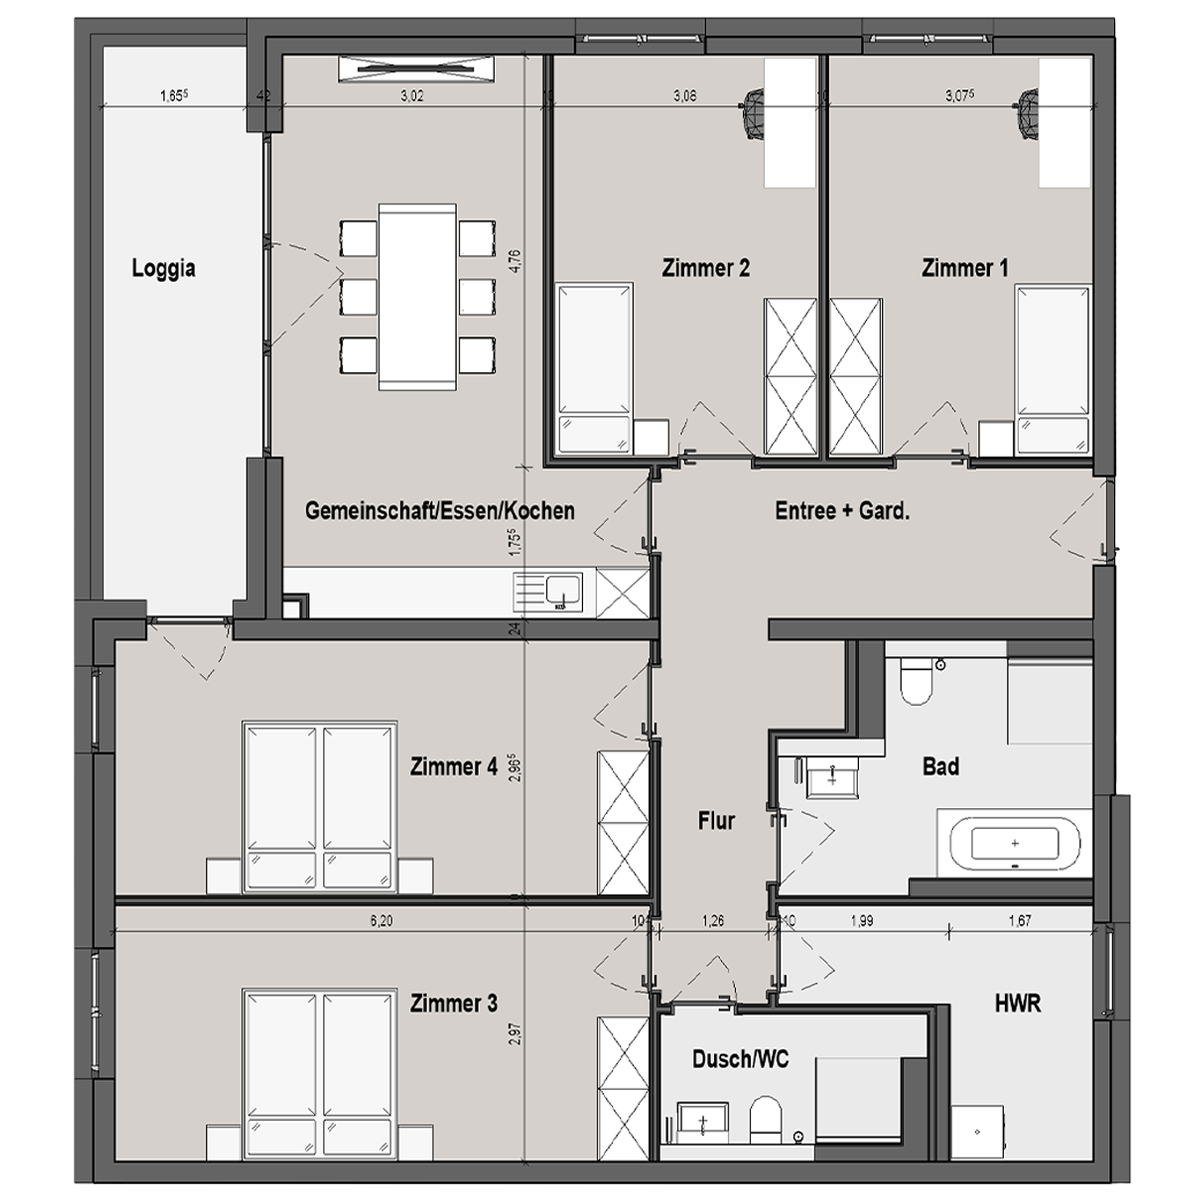 BF12 Landau Bauteil C 5 Zimmer-Wohnung Muster